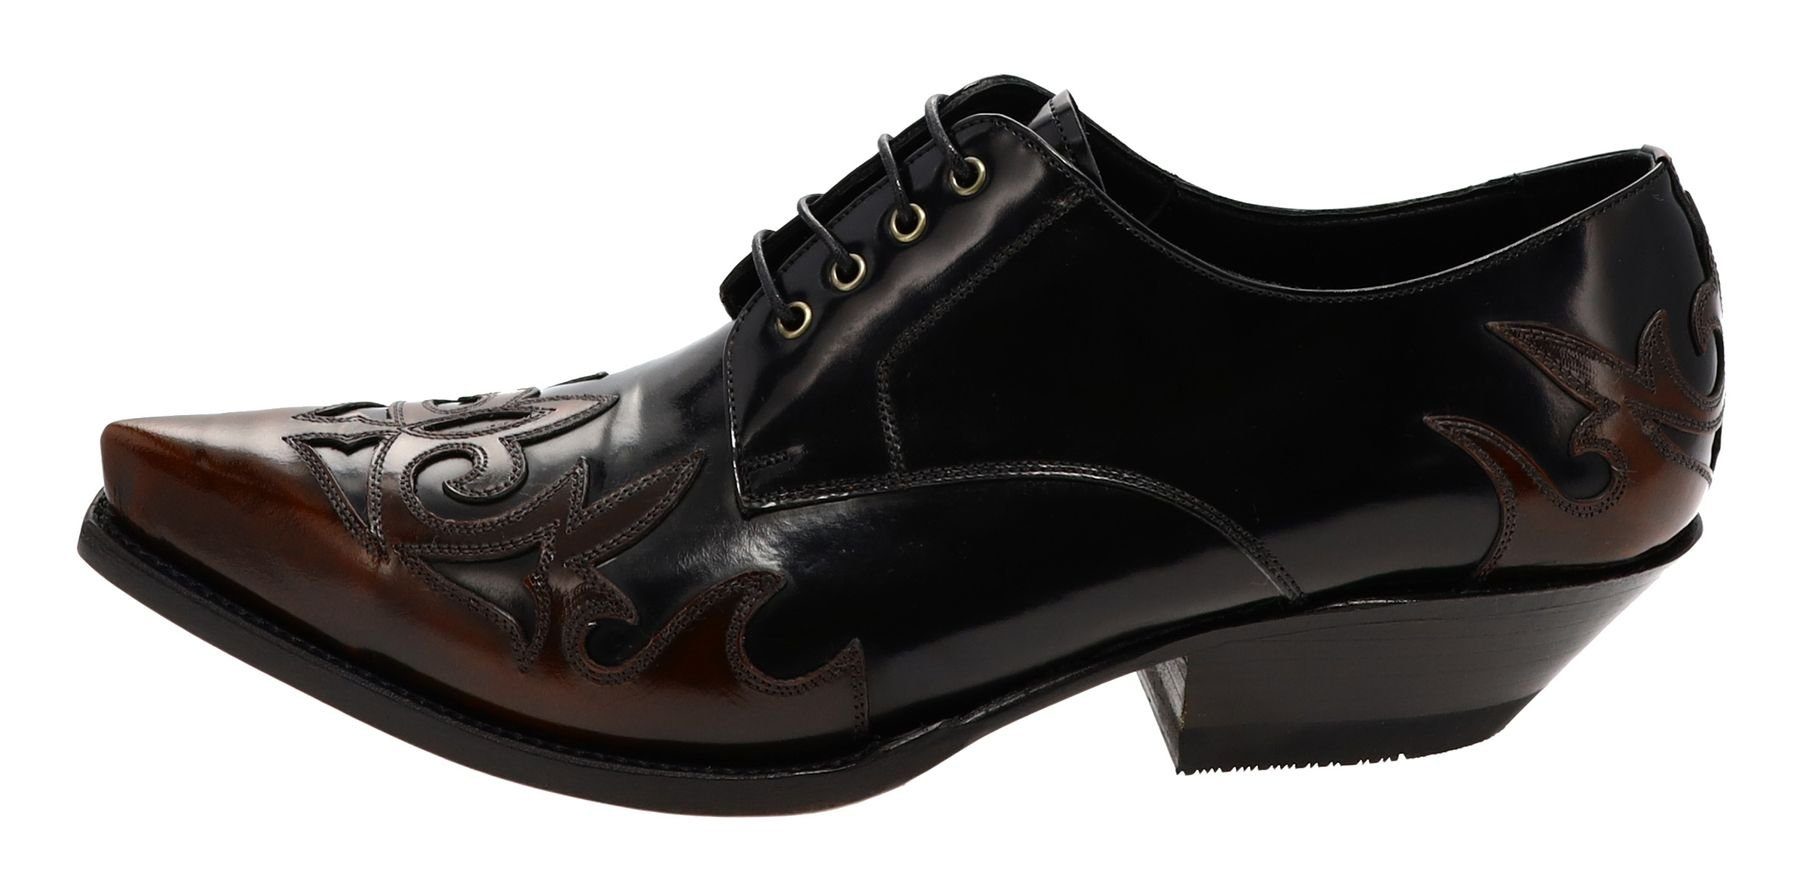 Schuhe Klassische Stiefeletten FB Fashion Boots Stiefelette ELOY Negro Burdeos Westernschuhe